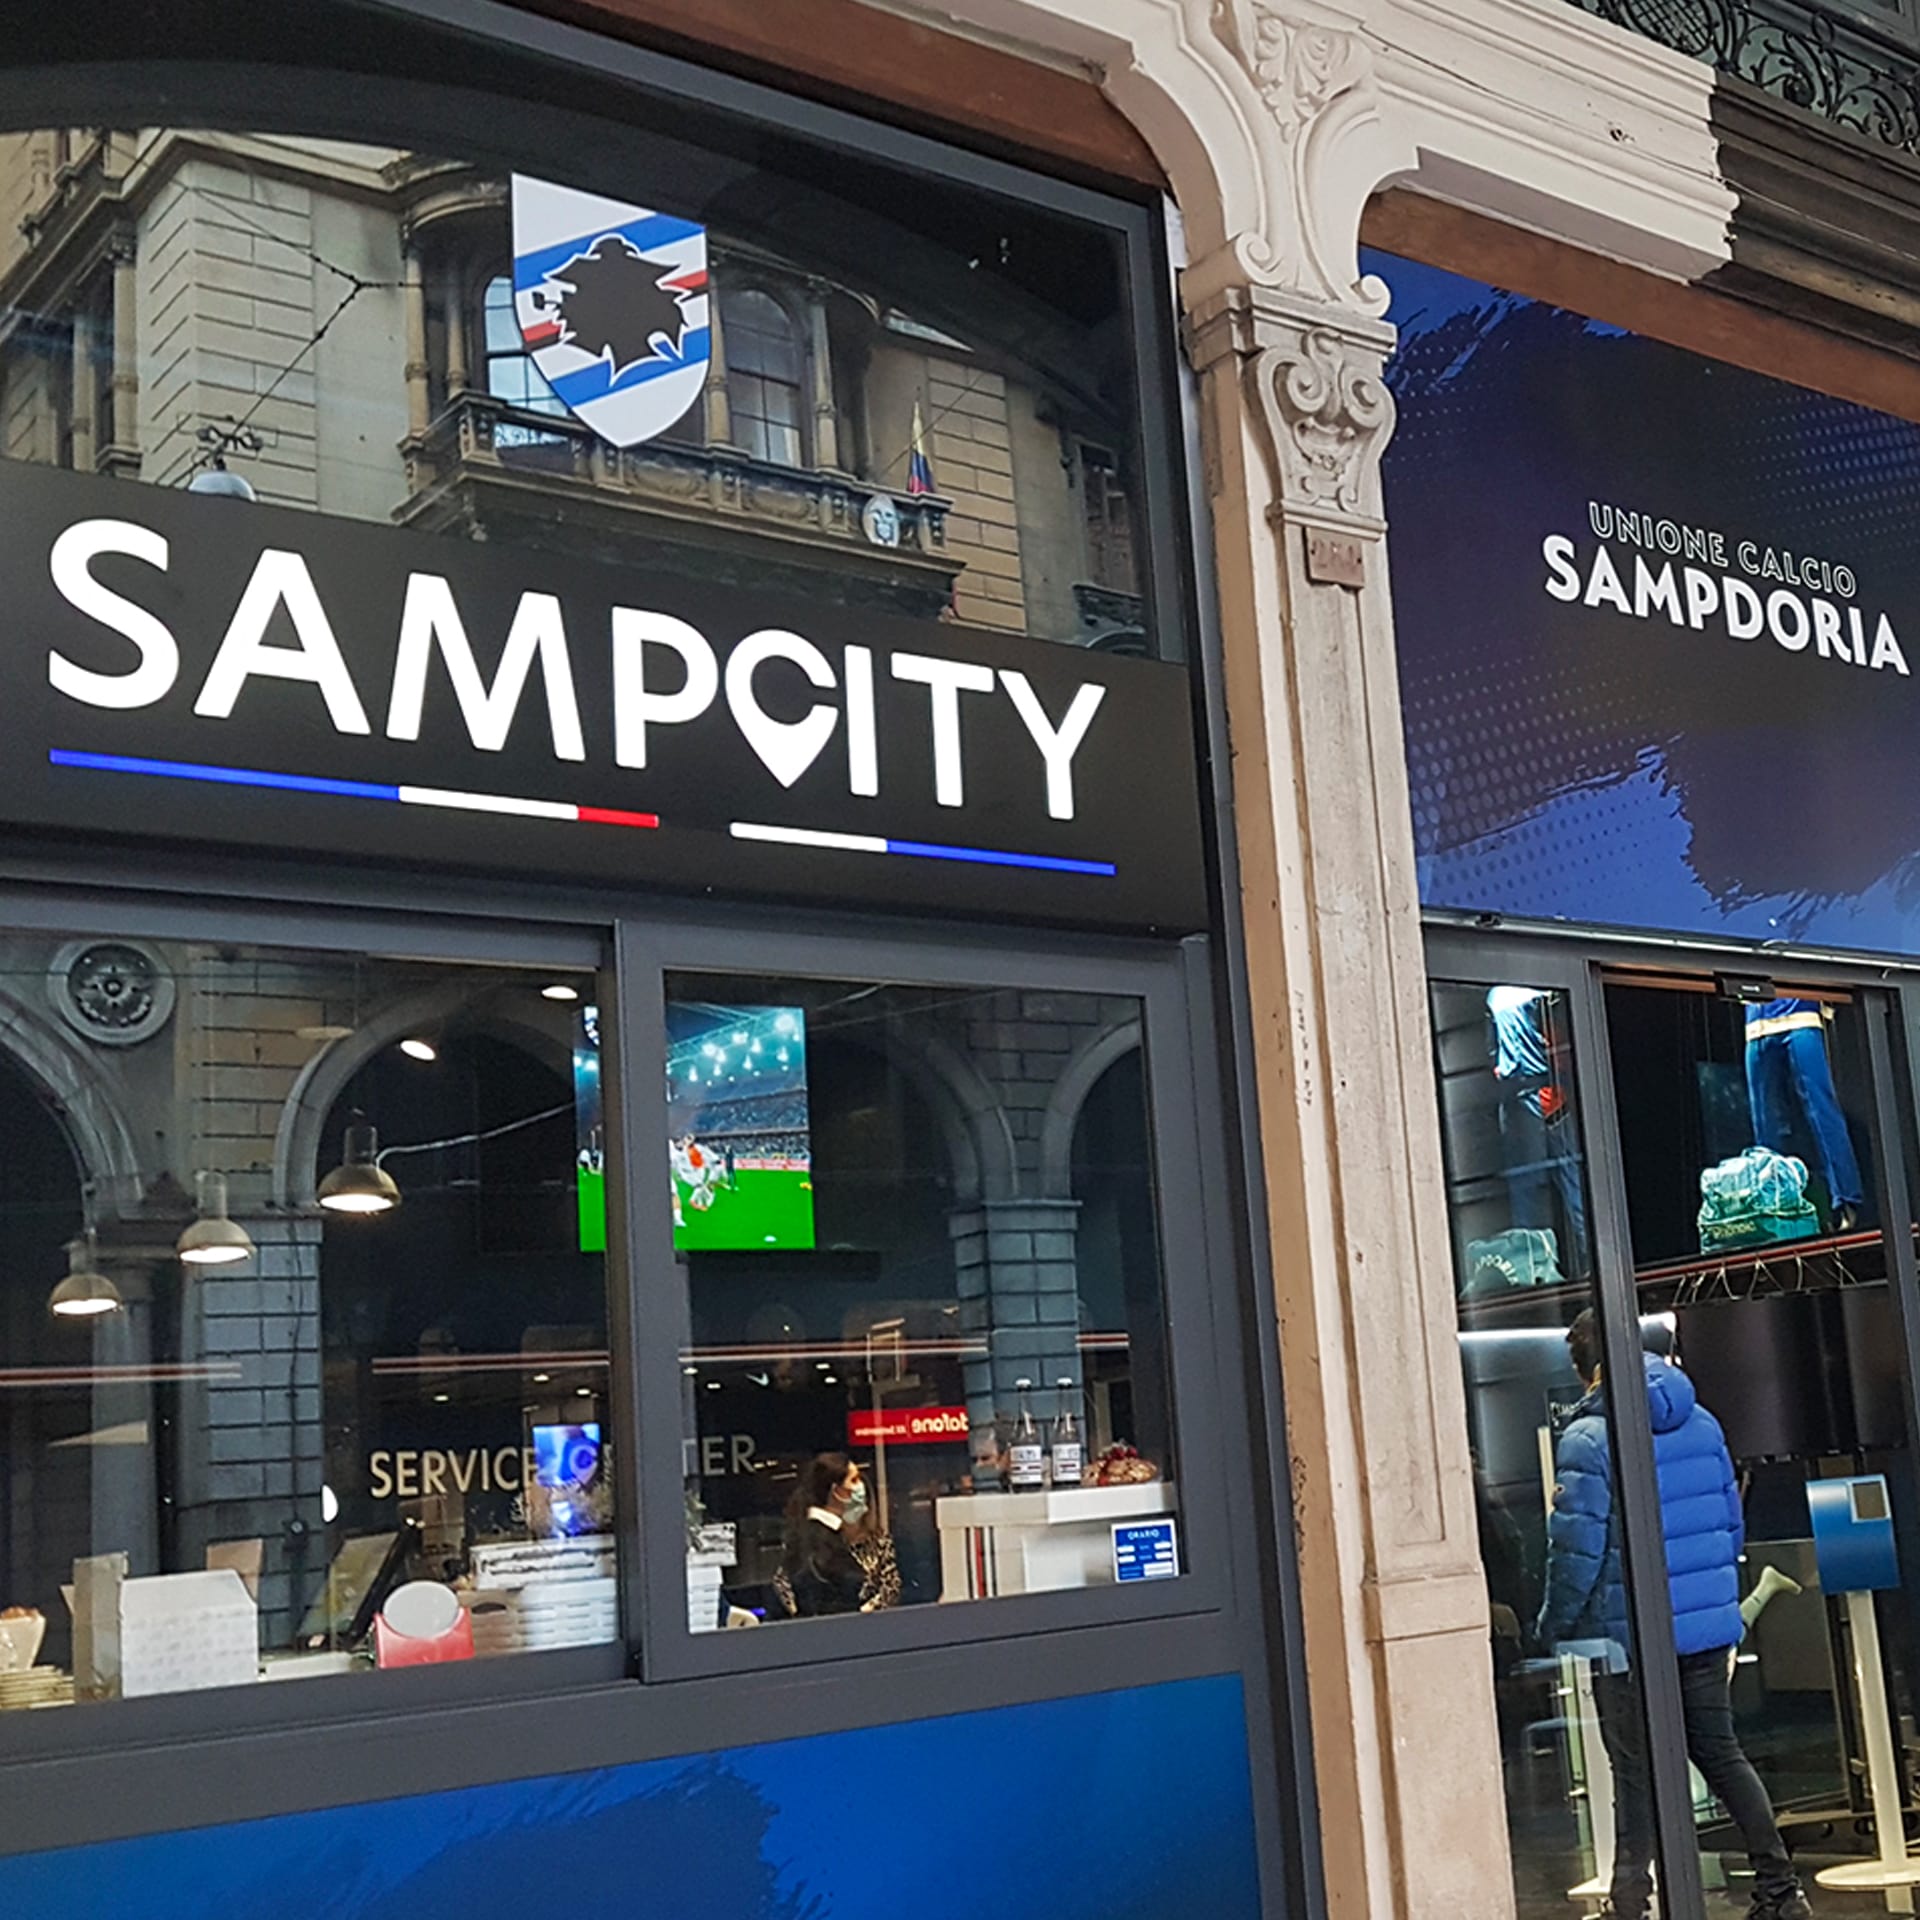 Sampcity Caffè Mike